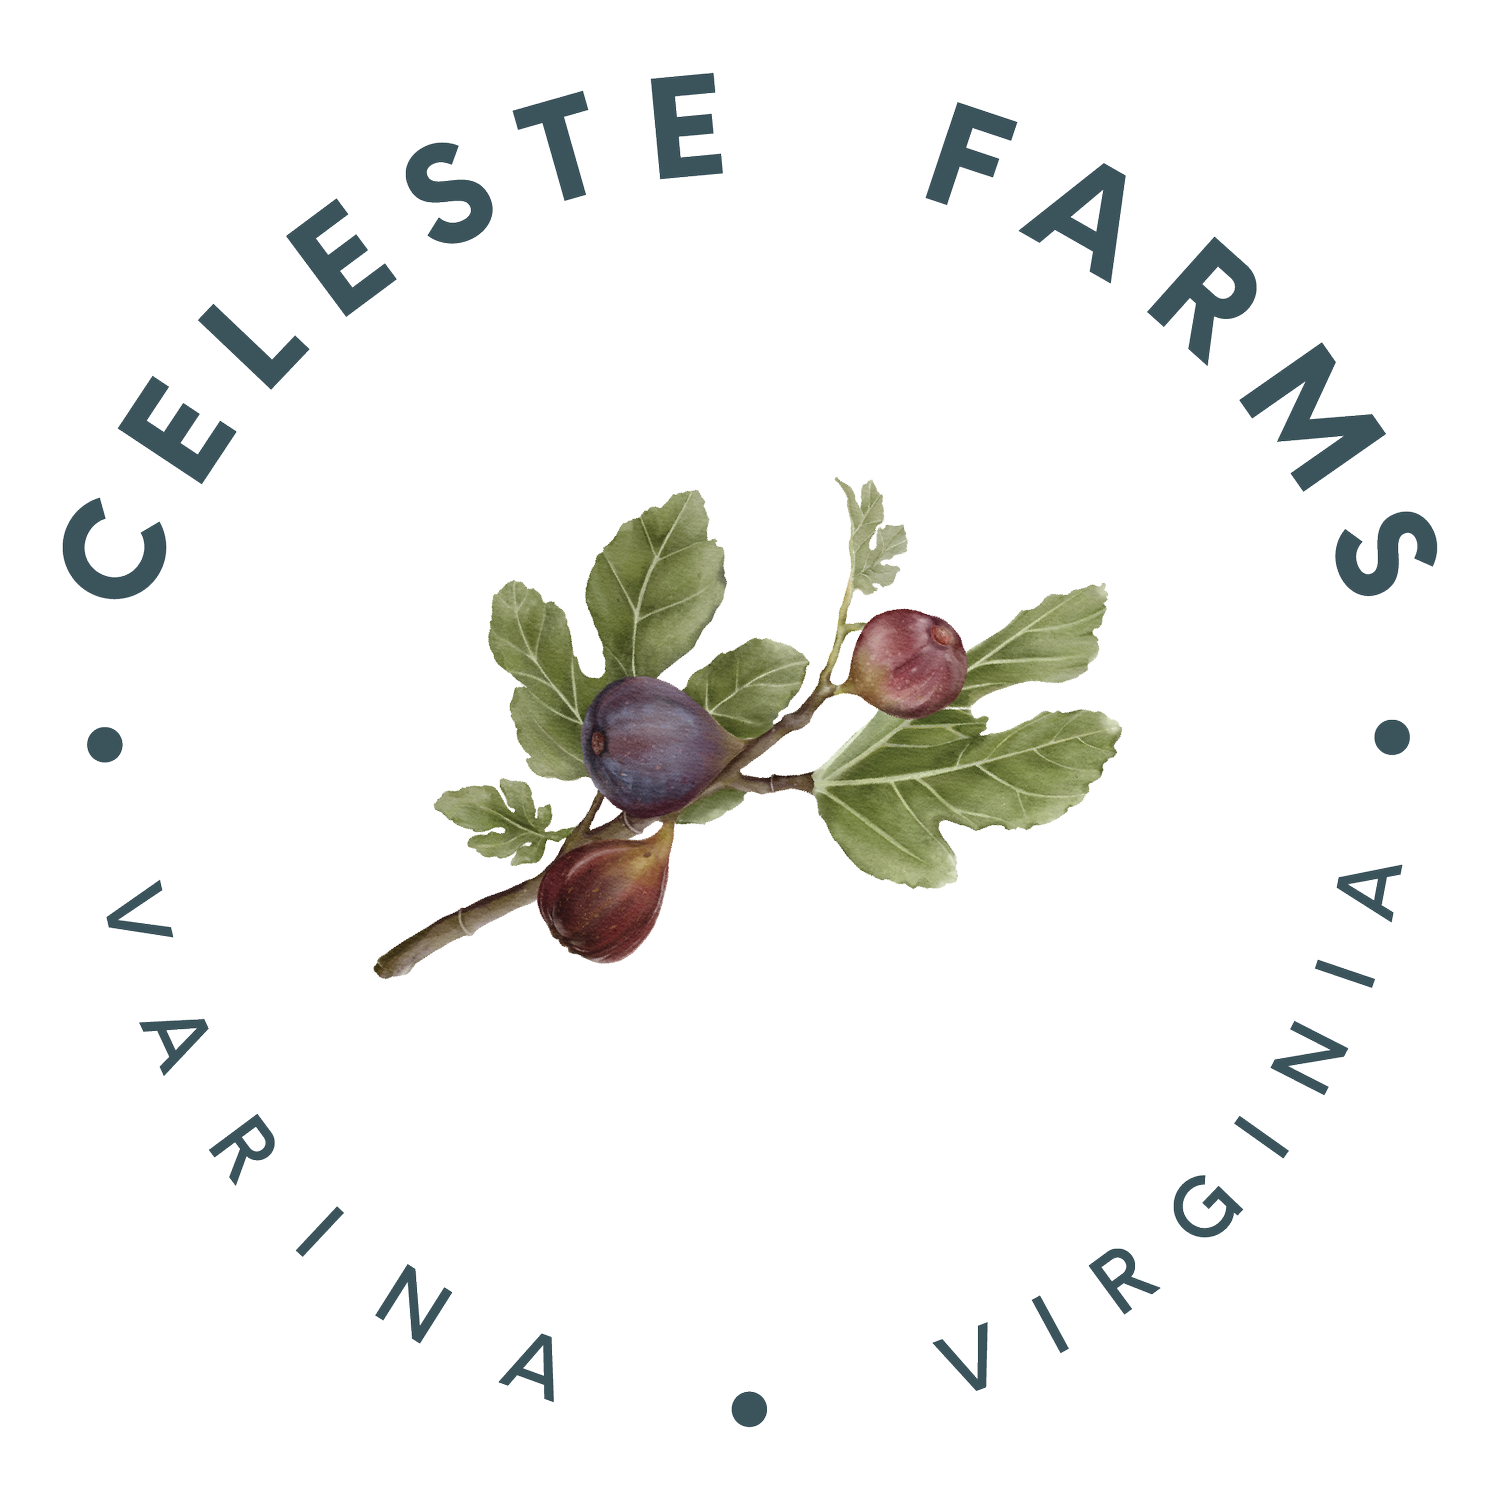 Celeste Farms